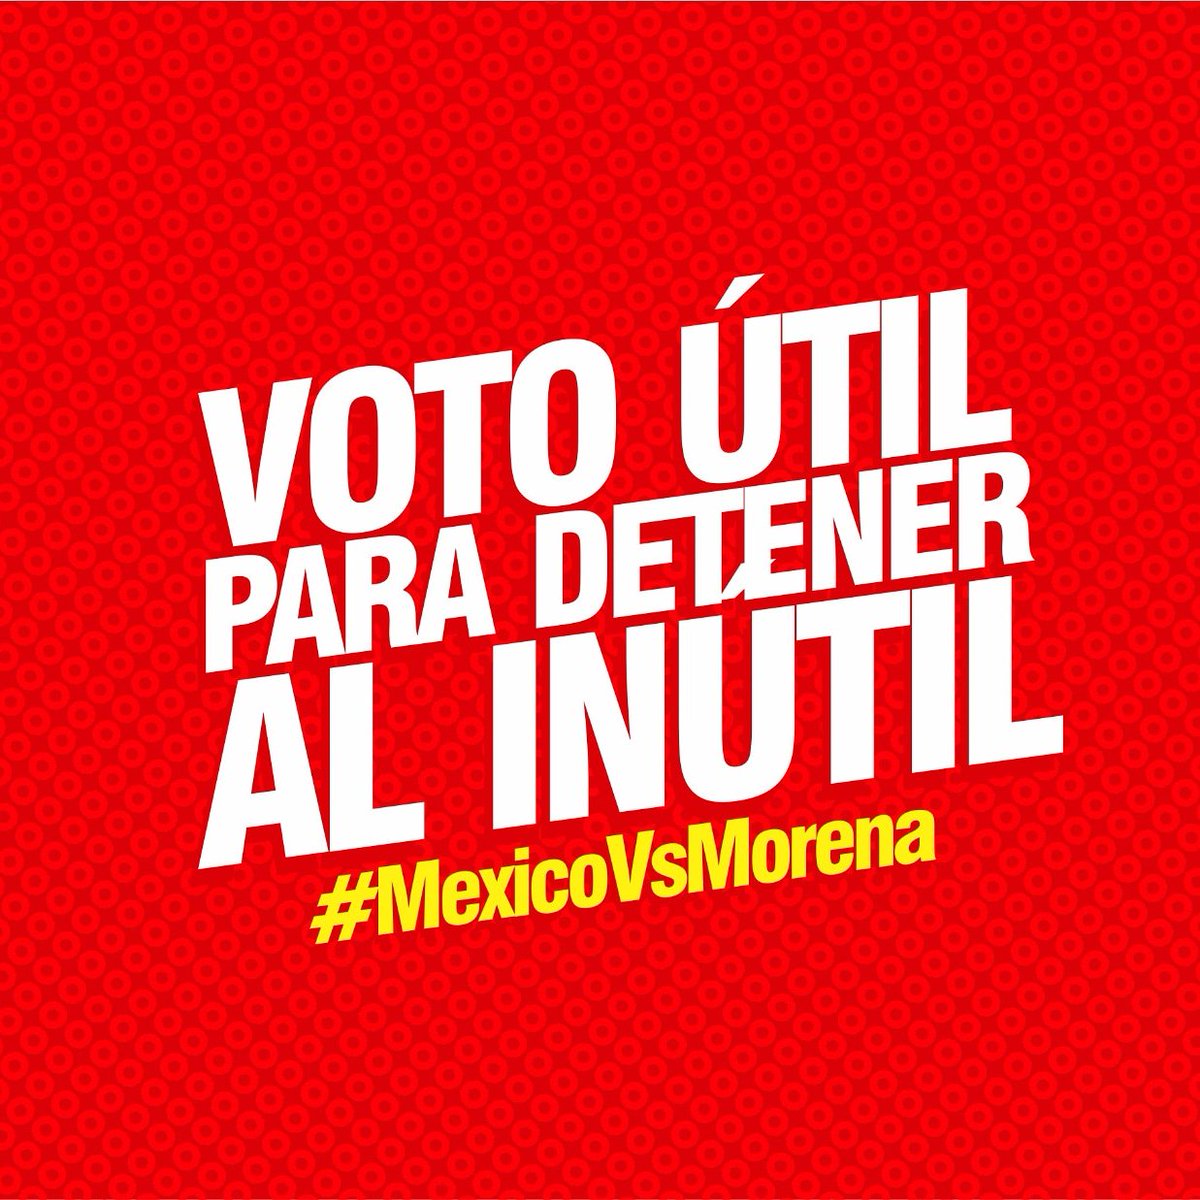 Levanten su trasero y salgan a votar!! 

#YoNoVotarePorMorena 
#YoConfioEnElINE